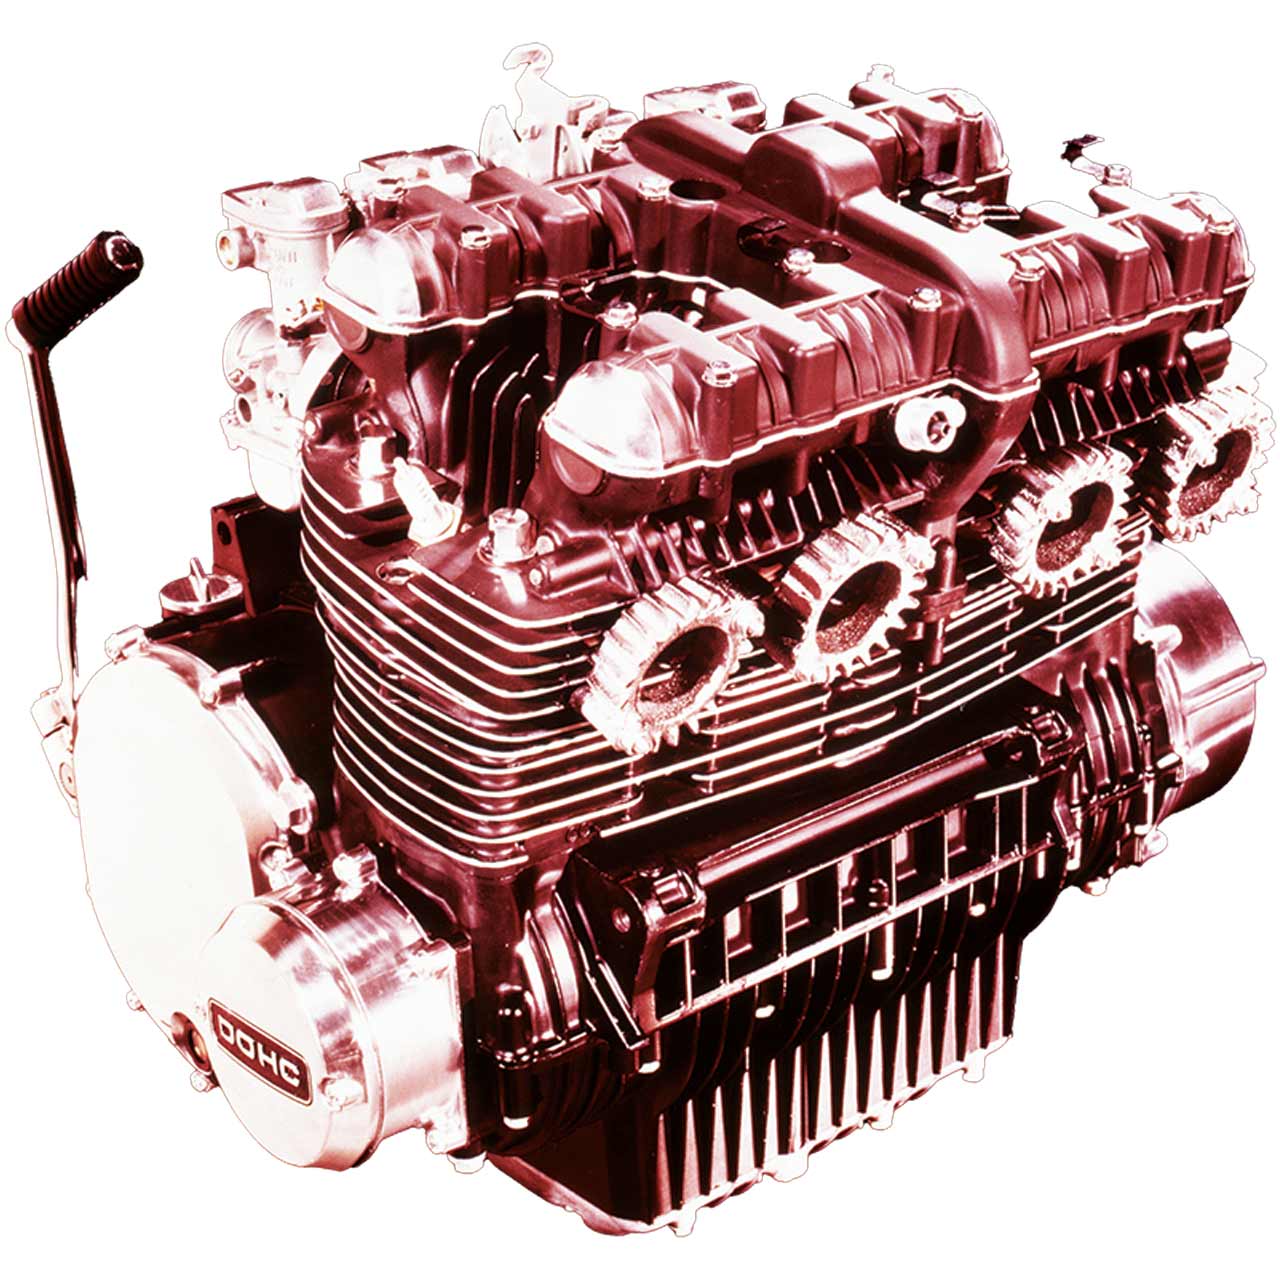 【当初はナナハンDOHC4気筒で試作も順調に進んでいたが……】
750cc空冷直列4気筒DOHCエンジンを開発中だった1968年秋の東京モーターショーで、ホンダがドリームCB750フォアを発表。903ccに変更することに